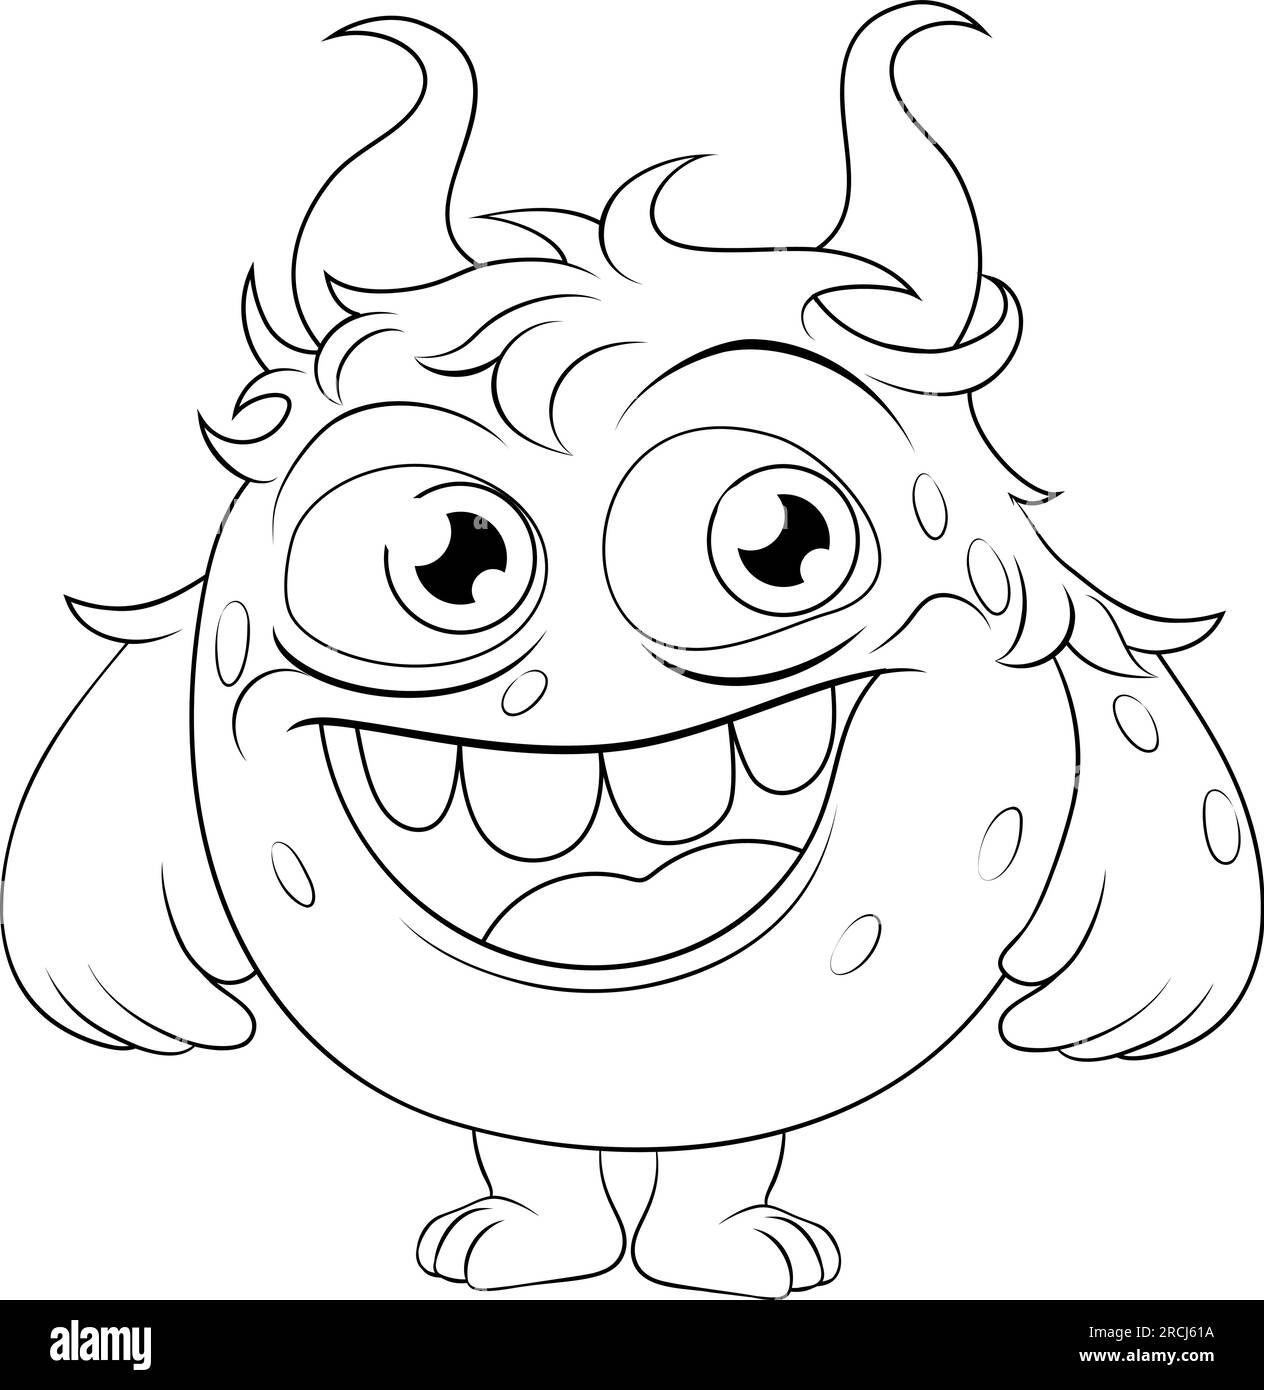 Monstre Alien Cute Cartoon drôle personnage Mascot Illustration de Vecteur